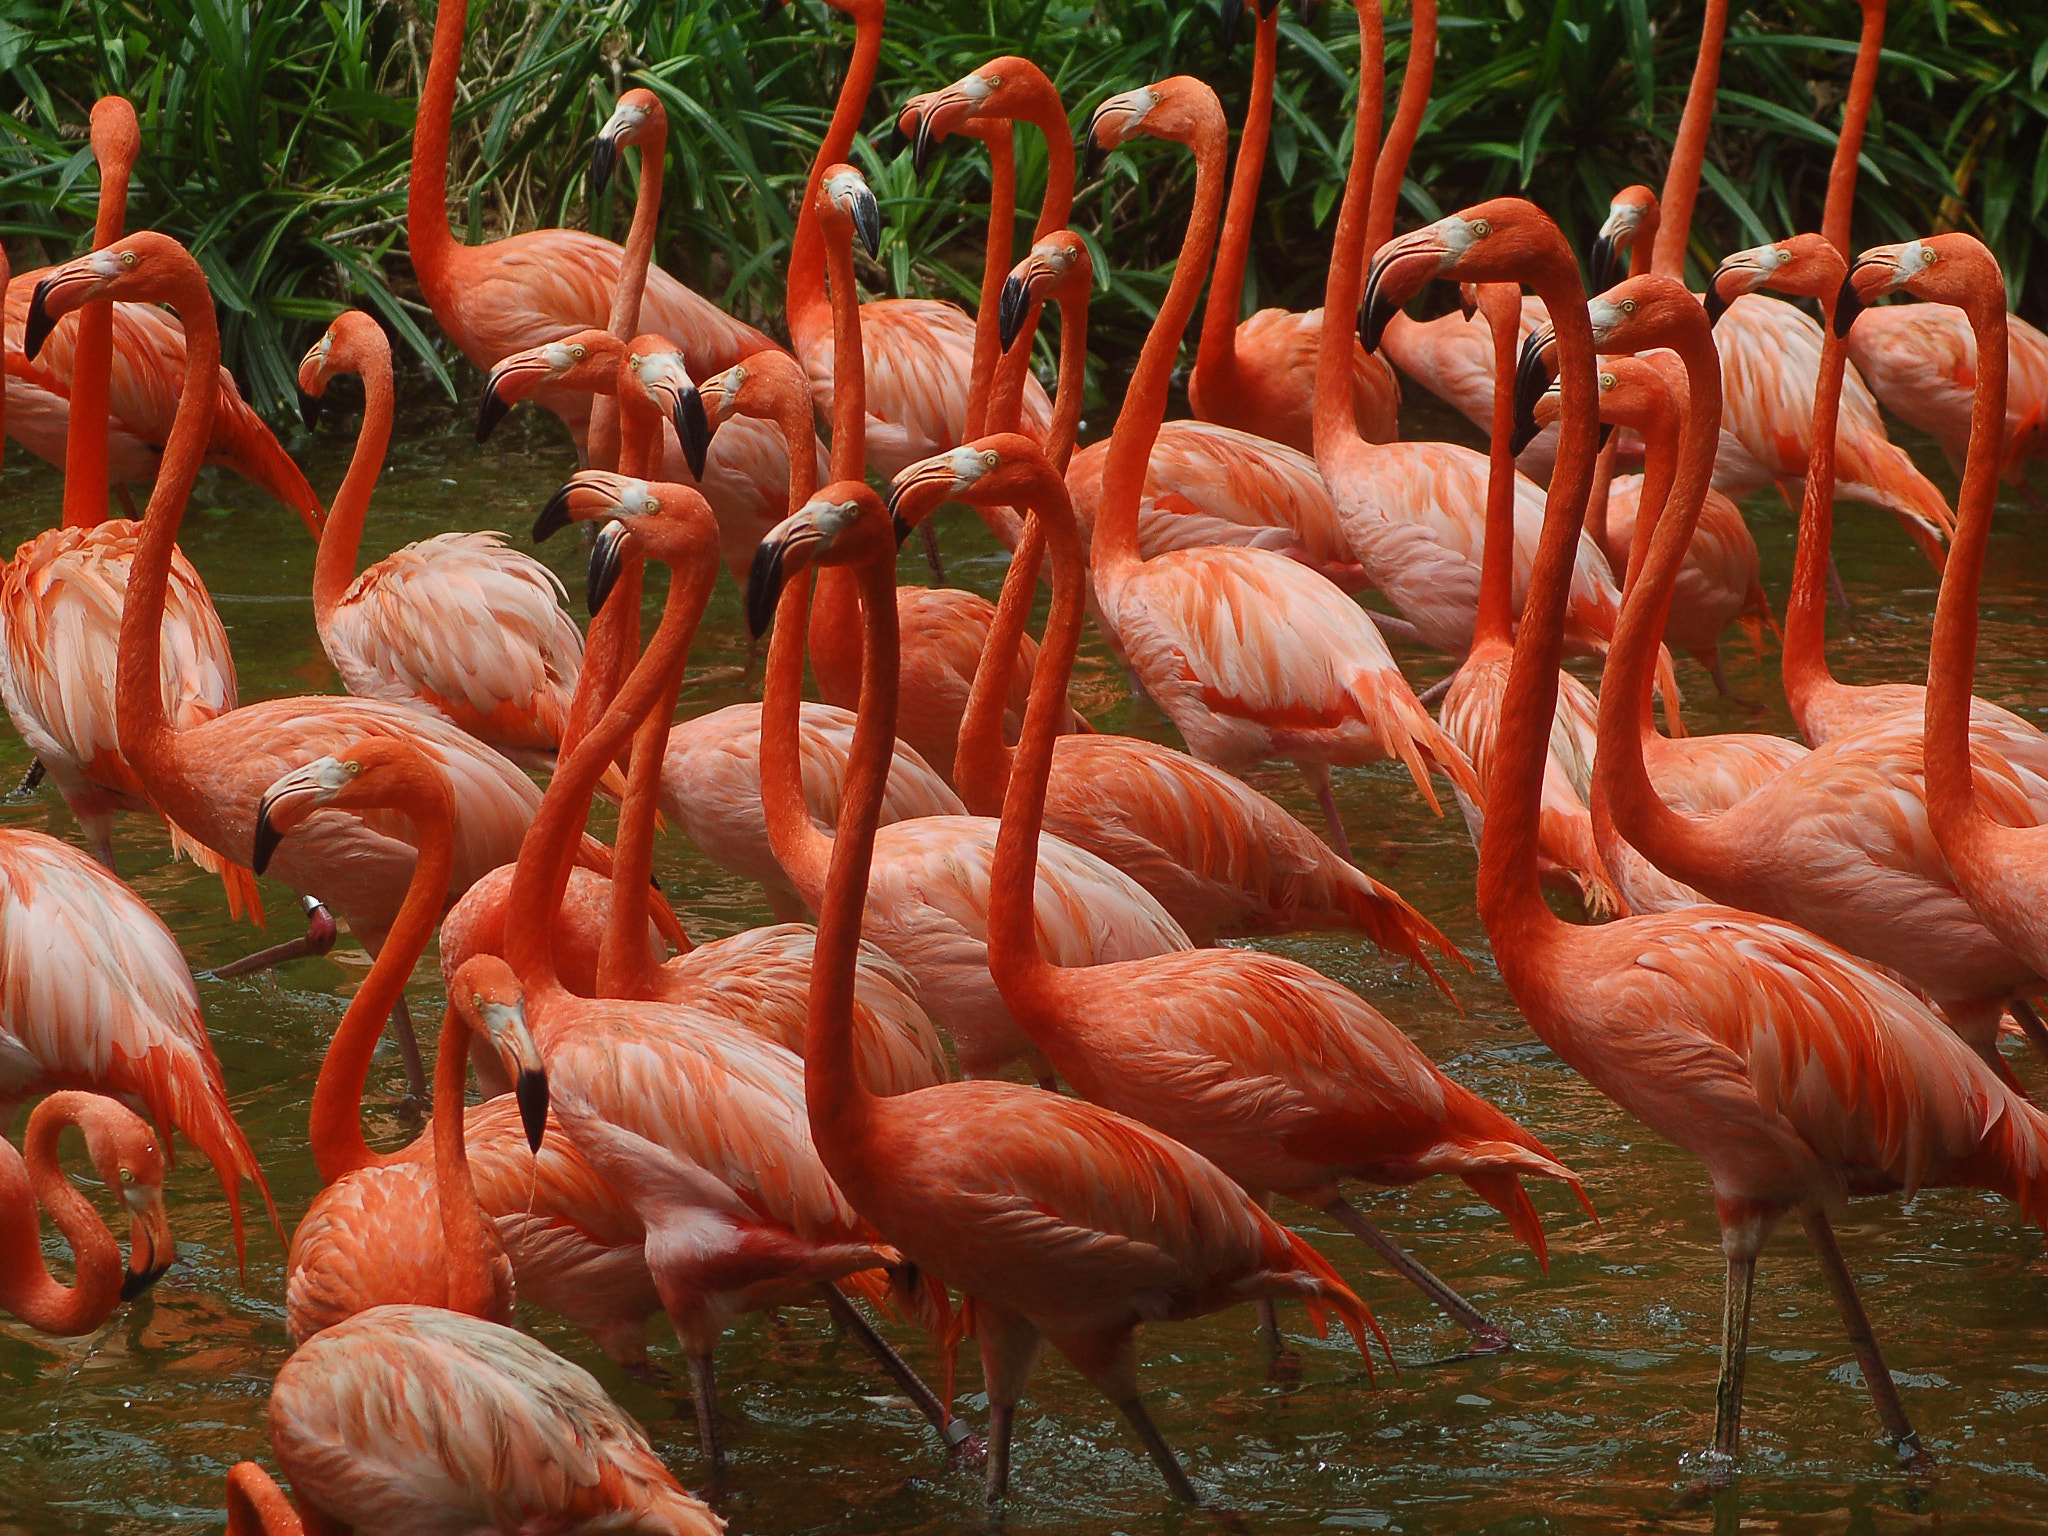 Nikon D50 sample photo. Turuncu flamingolar photography